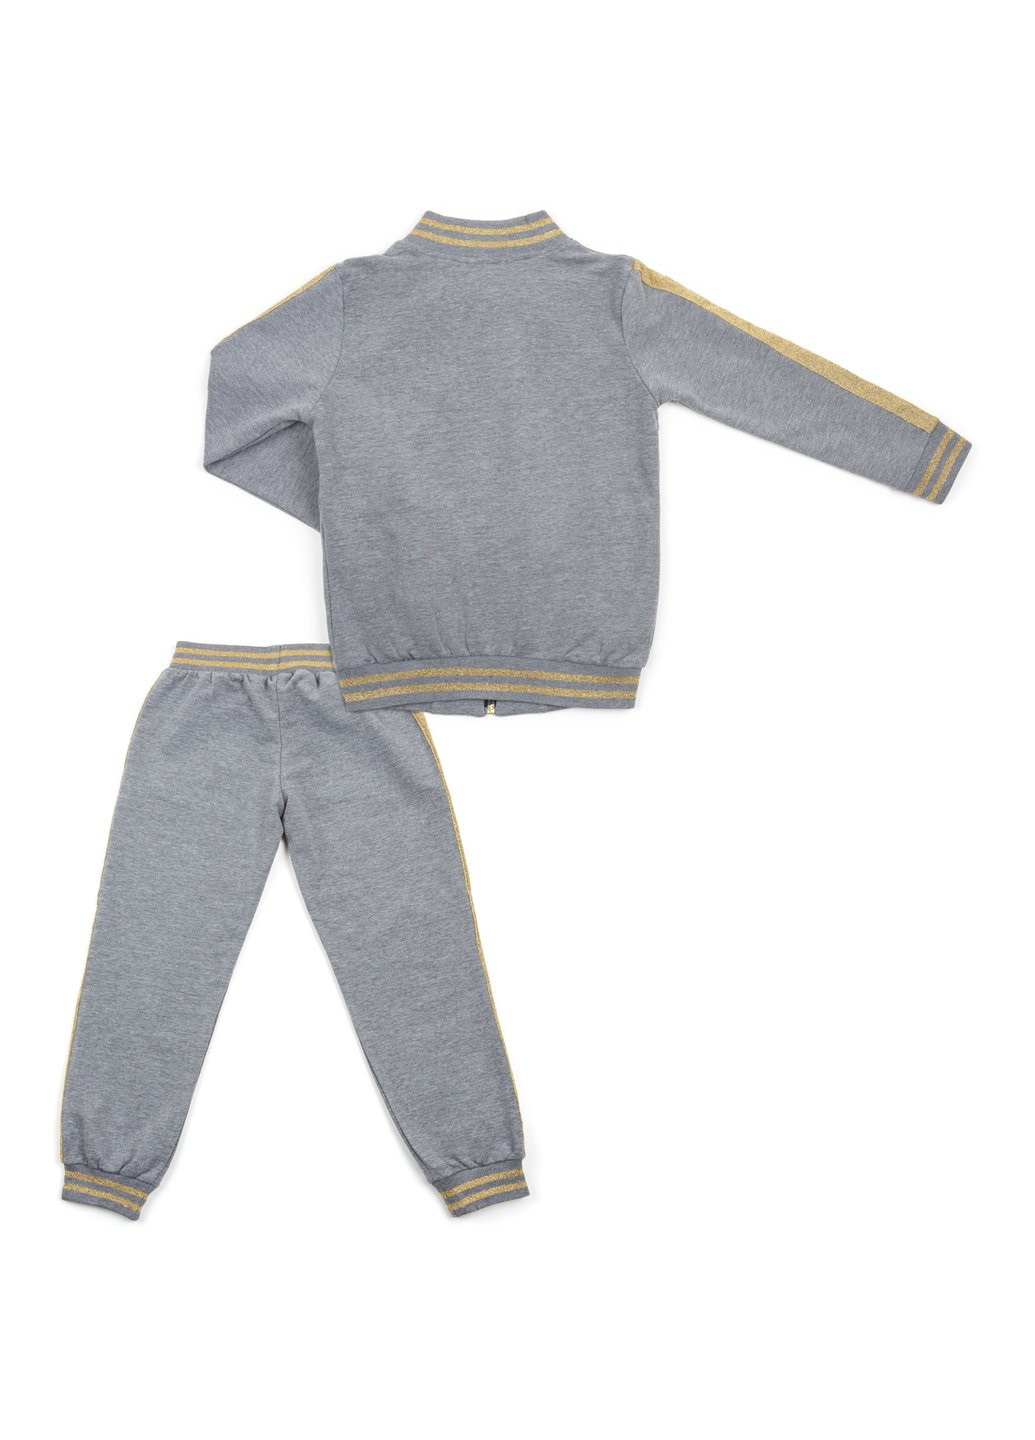 Комбинированный демисезонный набор детской одежды с золотыми лампасами (12986-134g-gray) Breeze